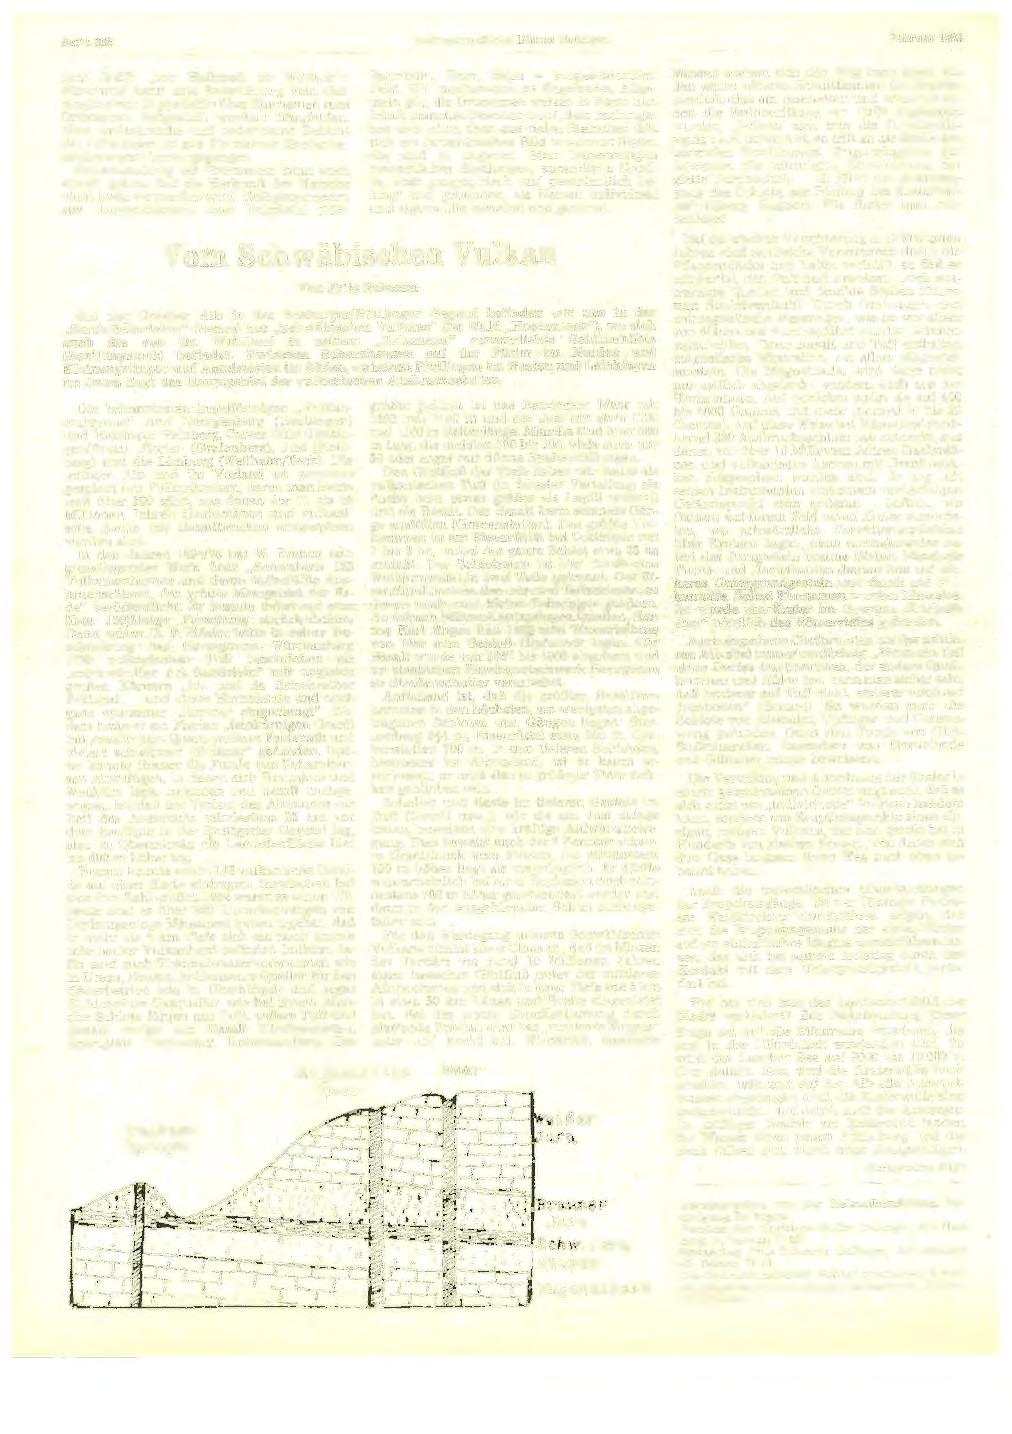 Seite 392 Heimatkundliehe Blätter Balingen Februar 1983 fach (1482: "zur Halbmeil ob Wolfach").